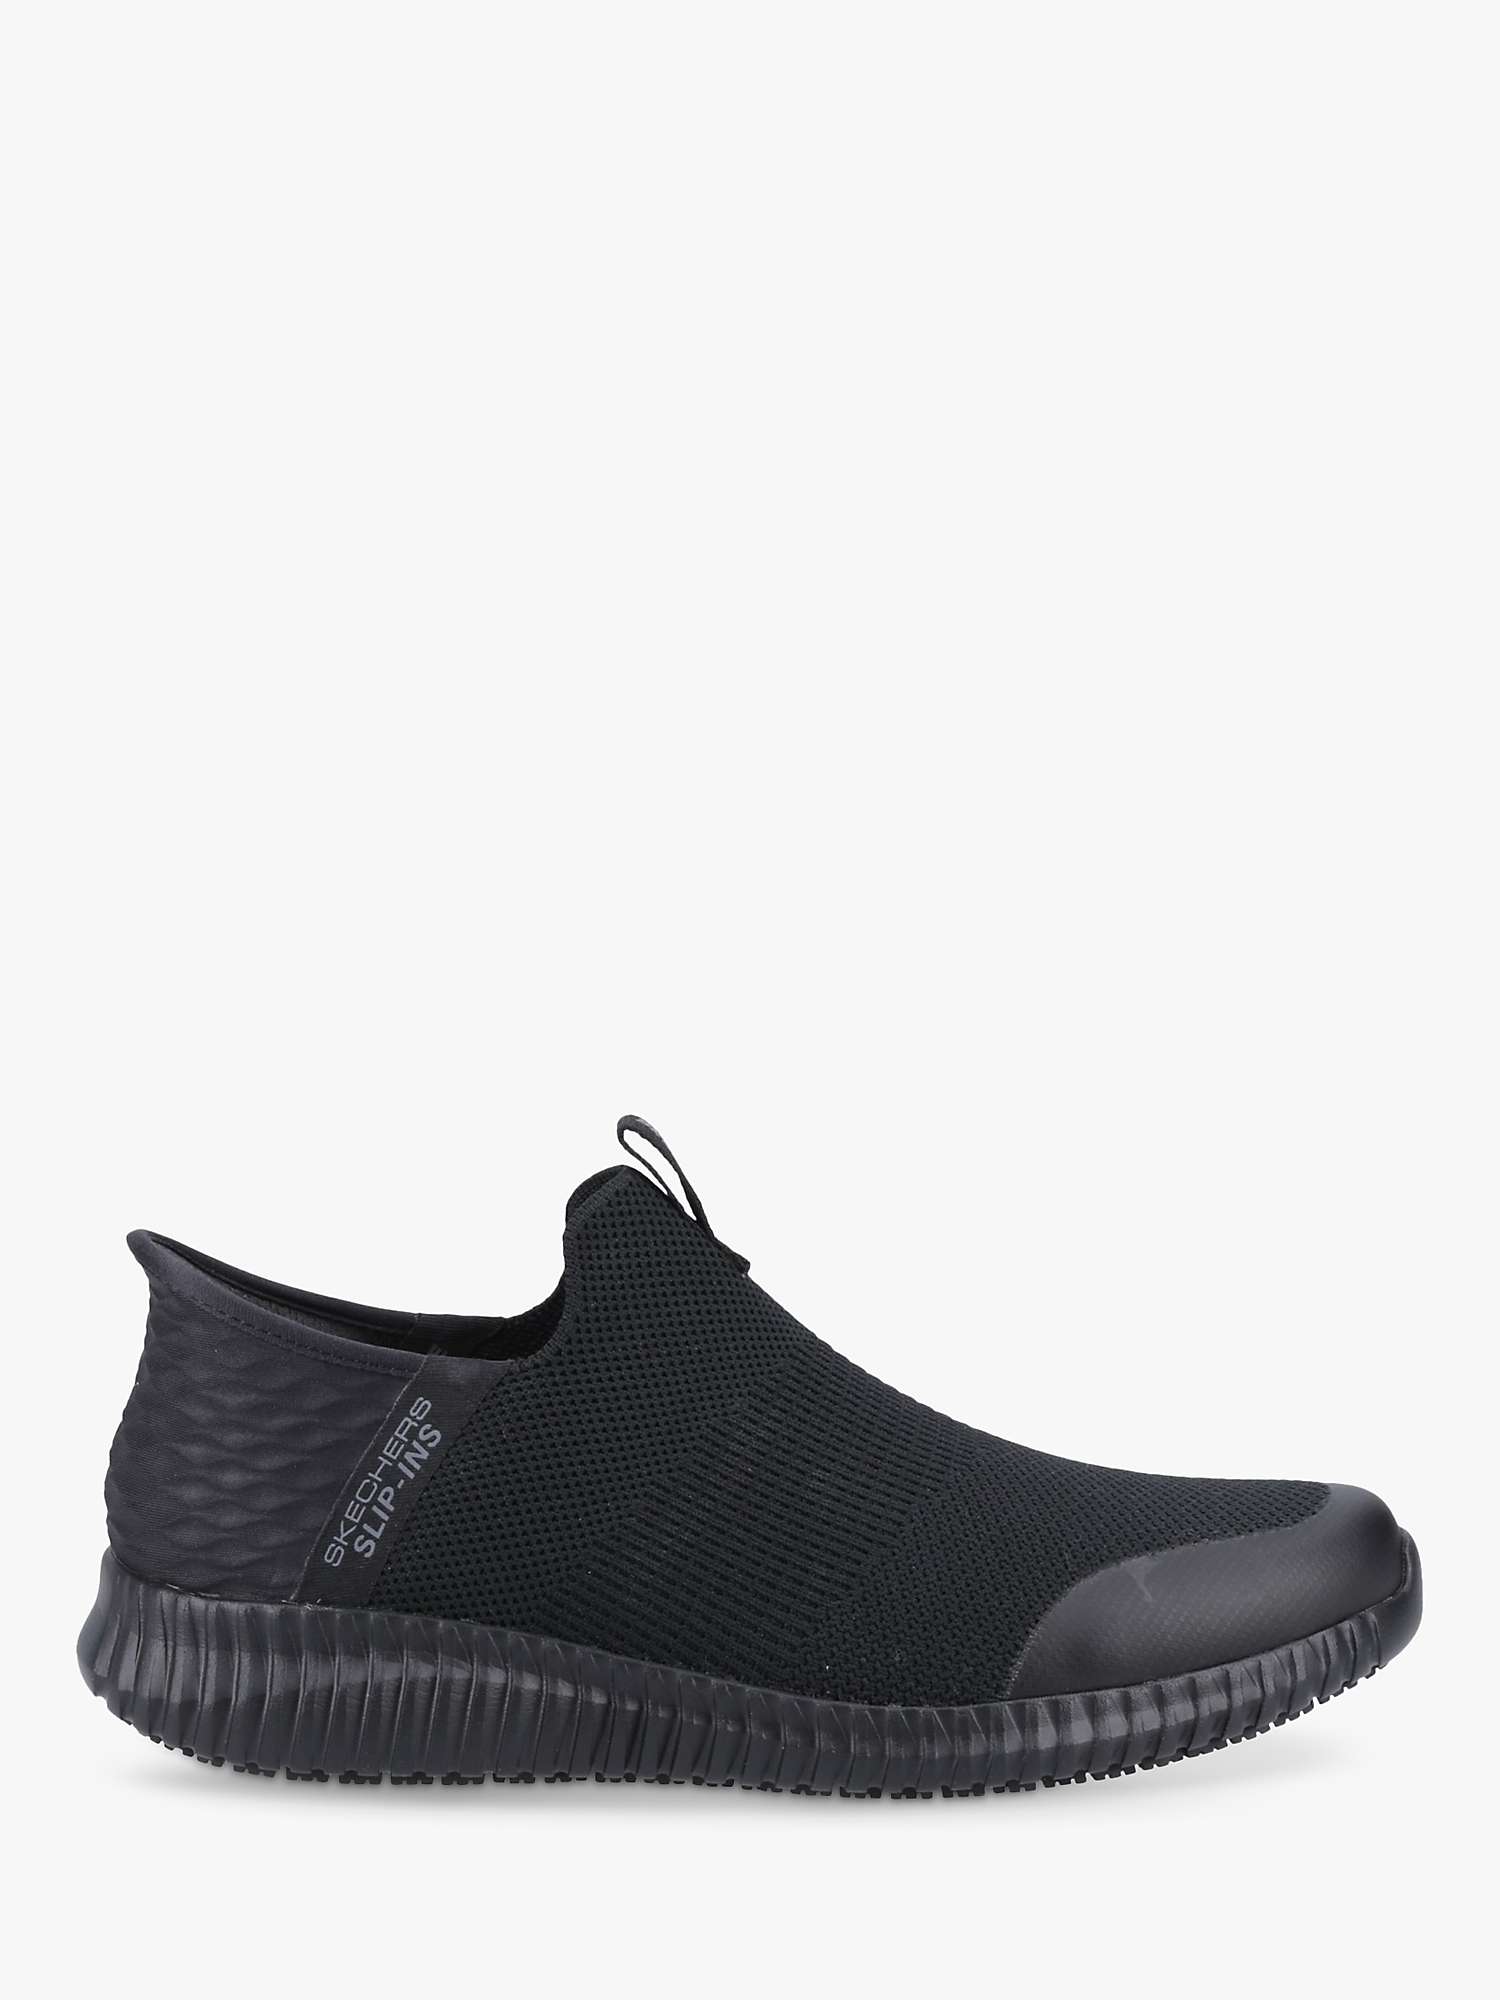 Buy Skechers Cessnock Rylind Slip Resistant Work Shoes, Black Online at johnlewis.com